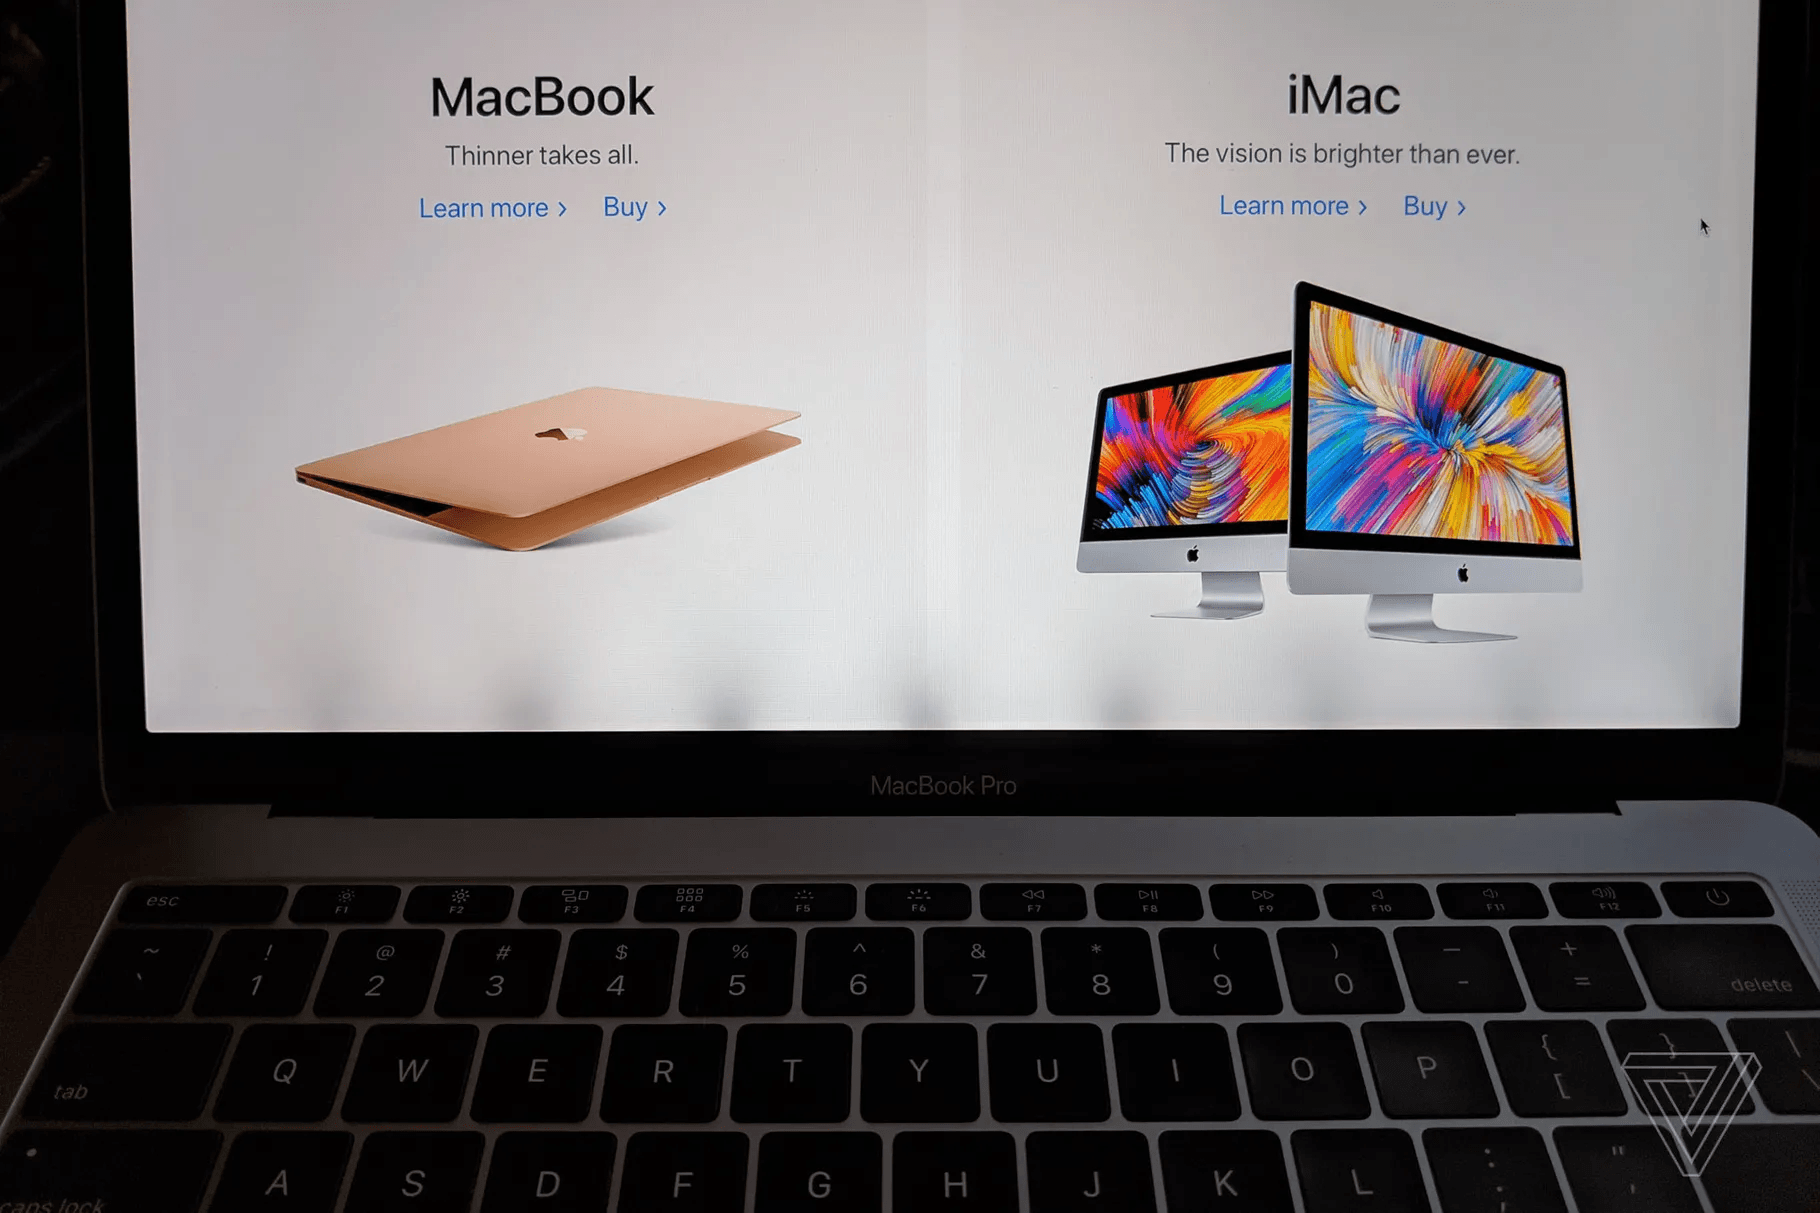 Слезающее антибликовое покрытие с экранов MacBook Pro 2015 модельного года может стать резонной причиной для обращения за заменой ноутбука В этом убедился п